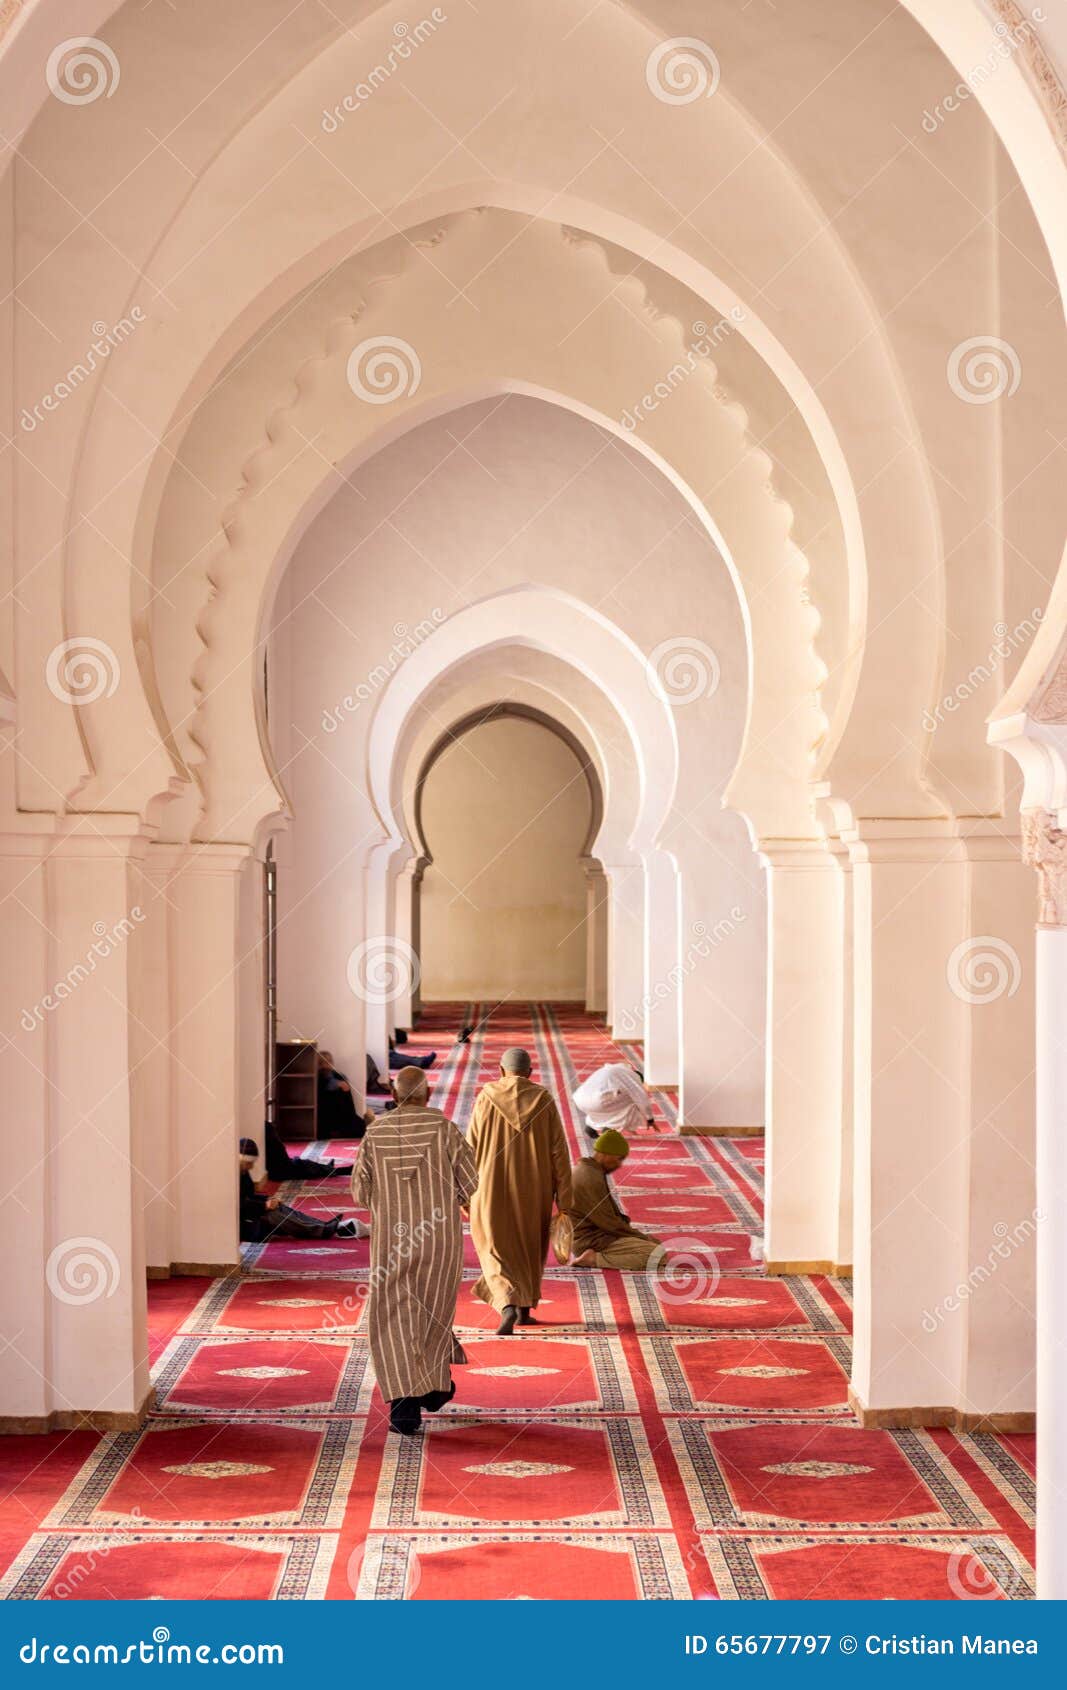 praying muslims inside a mosque